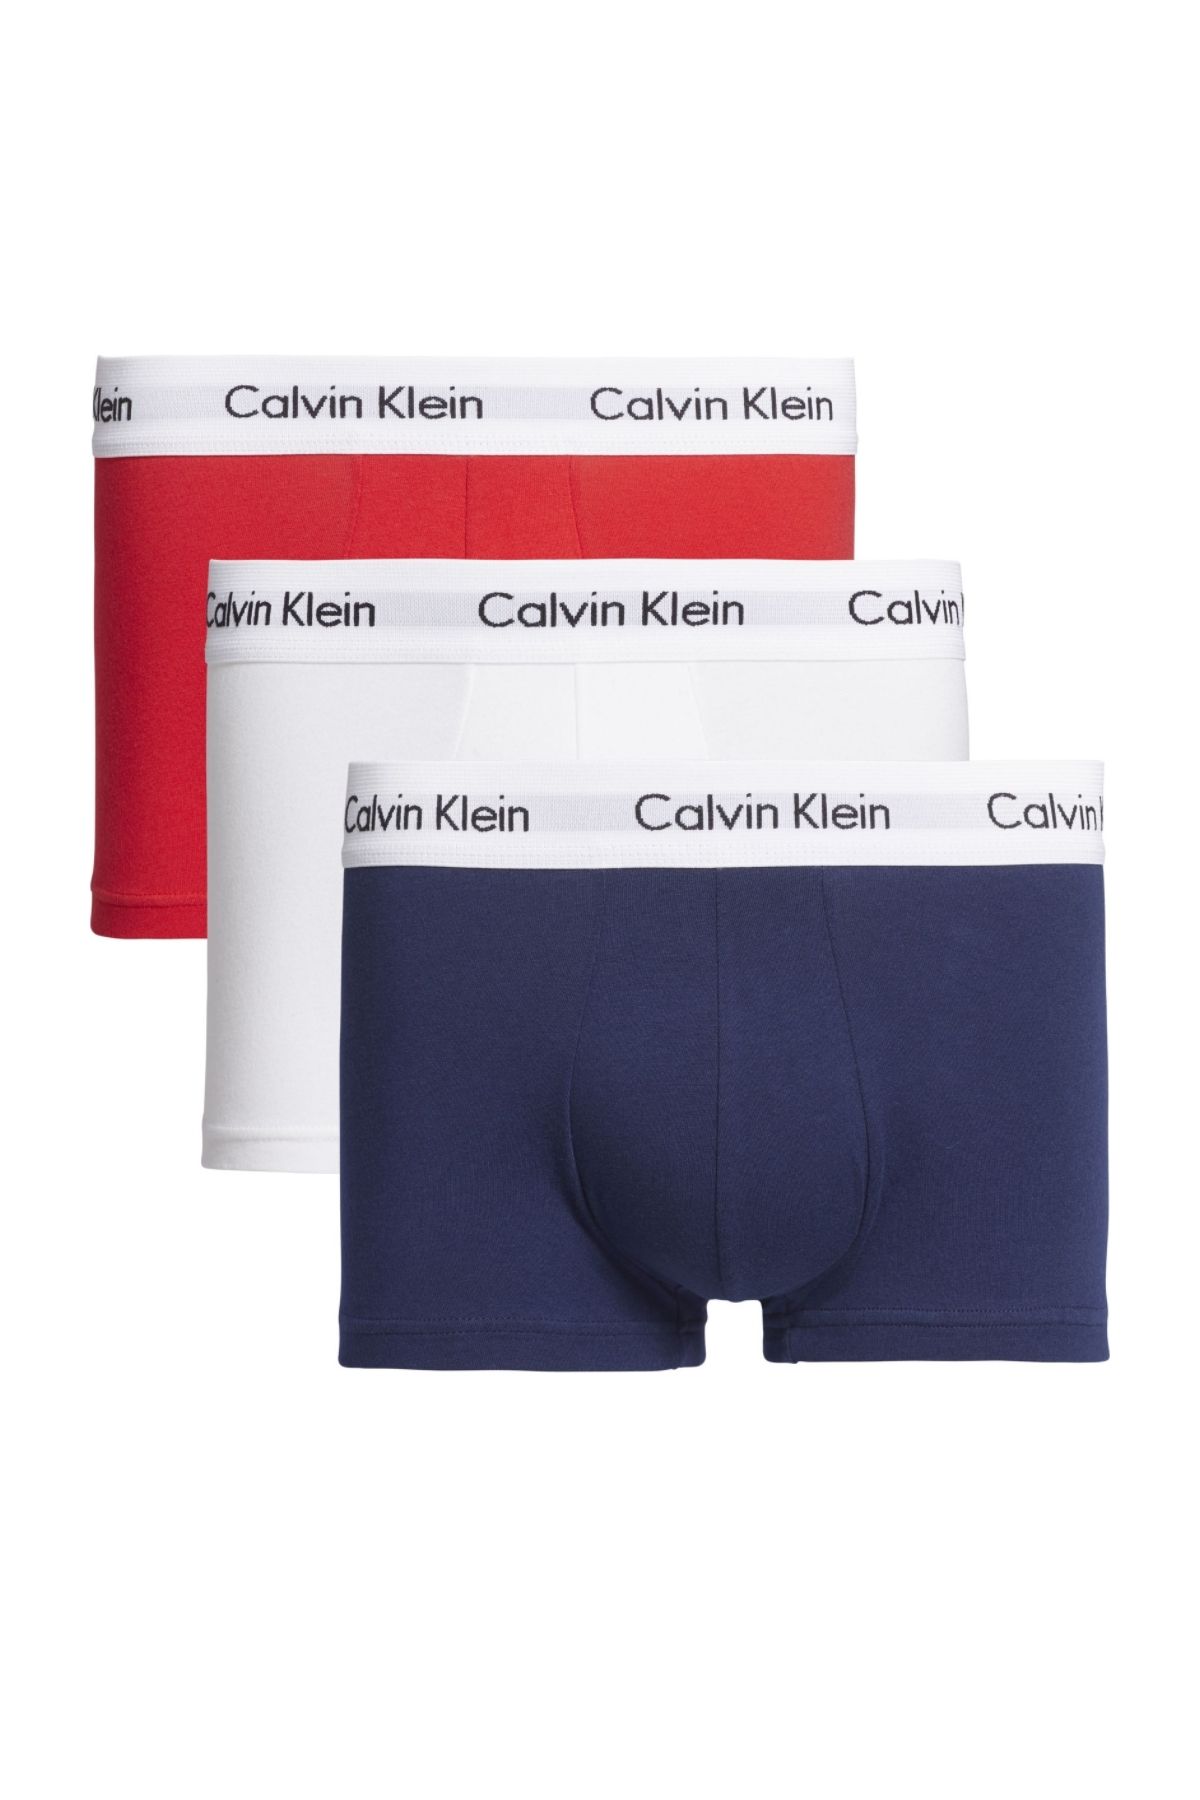 Calvin Klein Erkek Marka Logolu Elastik Bantlı Günlük Kullanıma Uygun Beyaz-lacivert-kırmızı Boxer U2664g-ı03